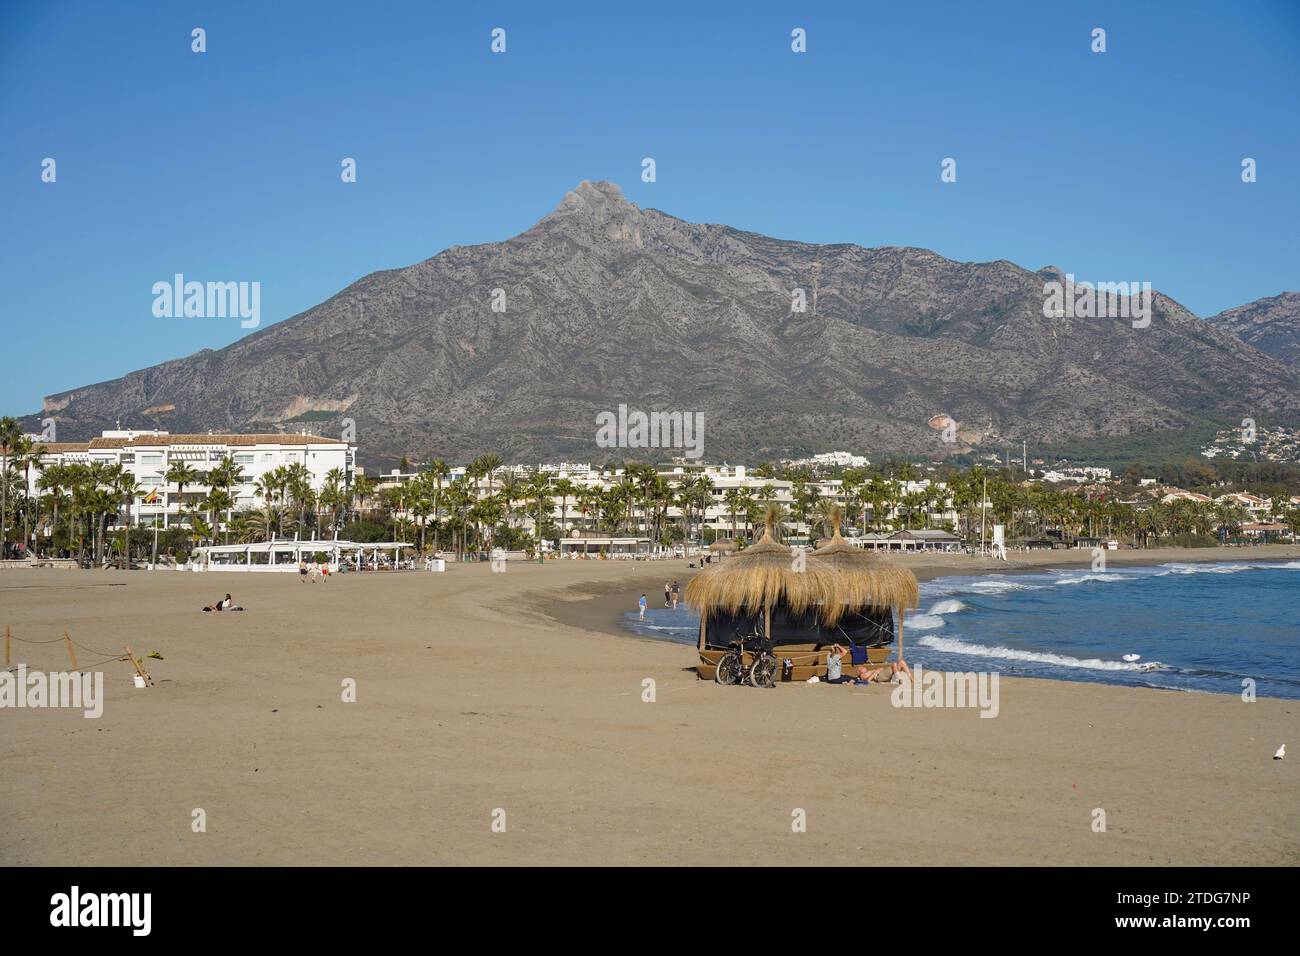 Puerto Banús Strand, Marbella, mit dem Berg La Concha dahinter, Costa del sol, Wintersaison, Andalusien, Spanien. Stockfoto